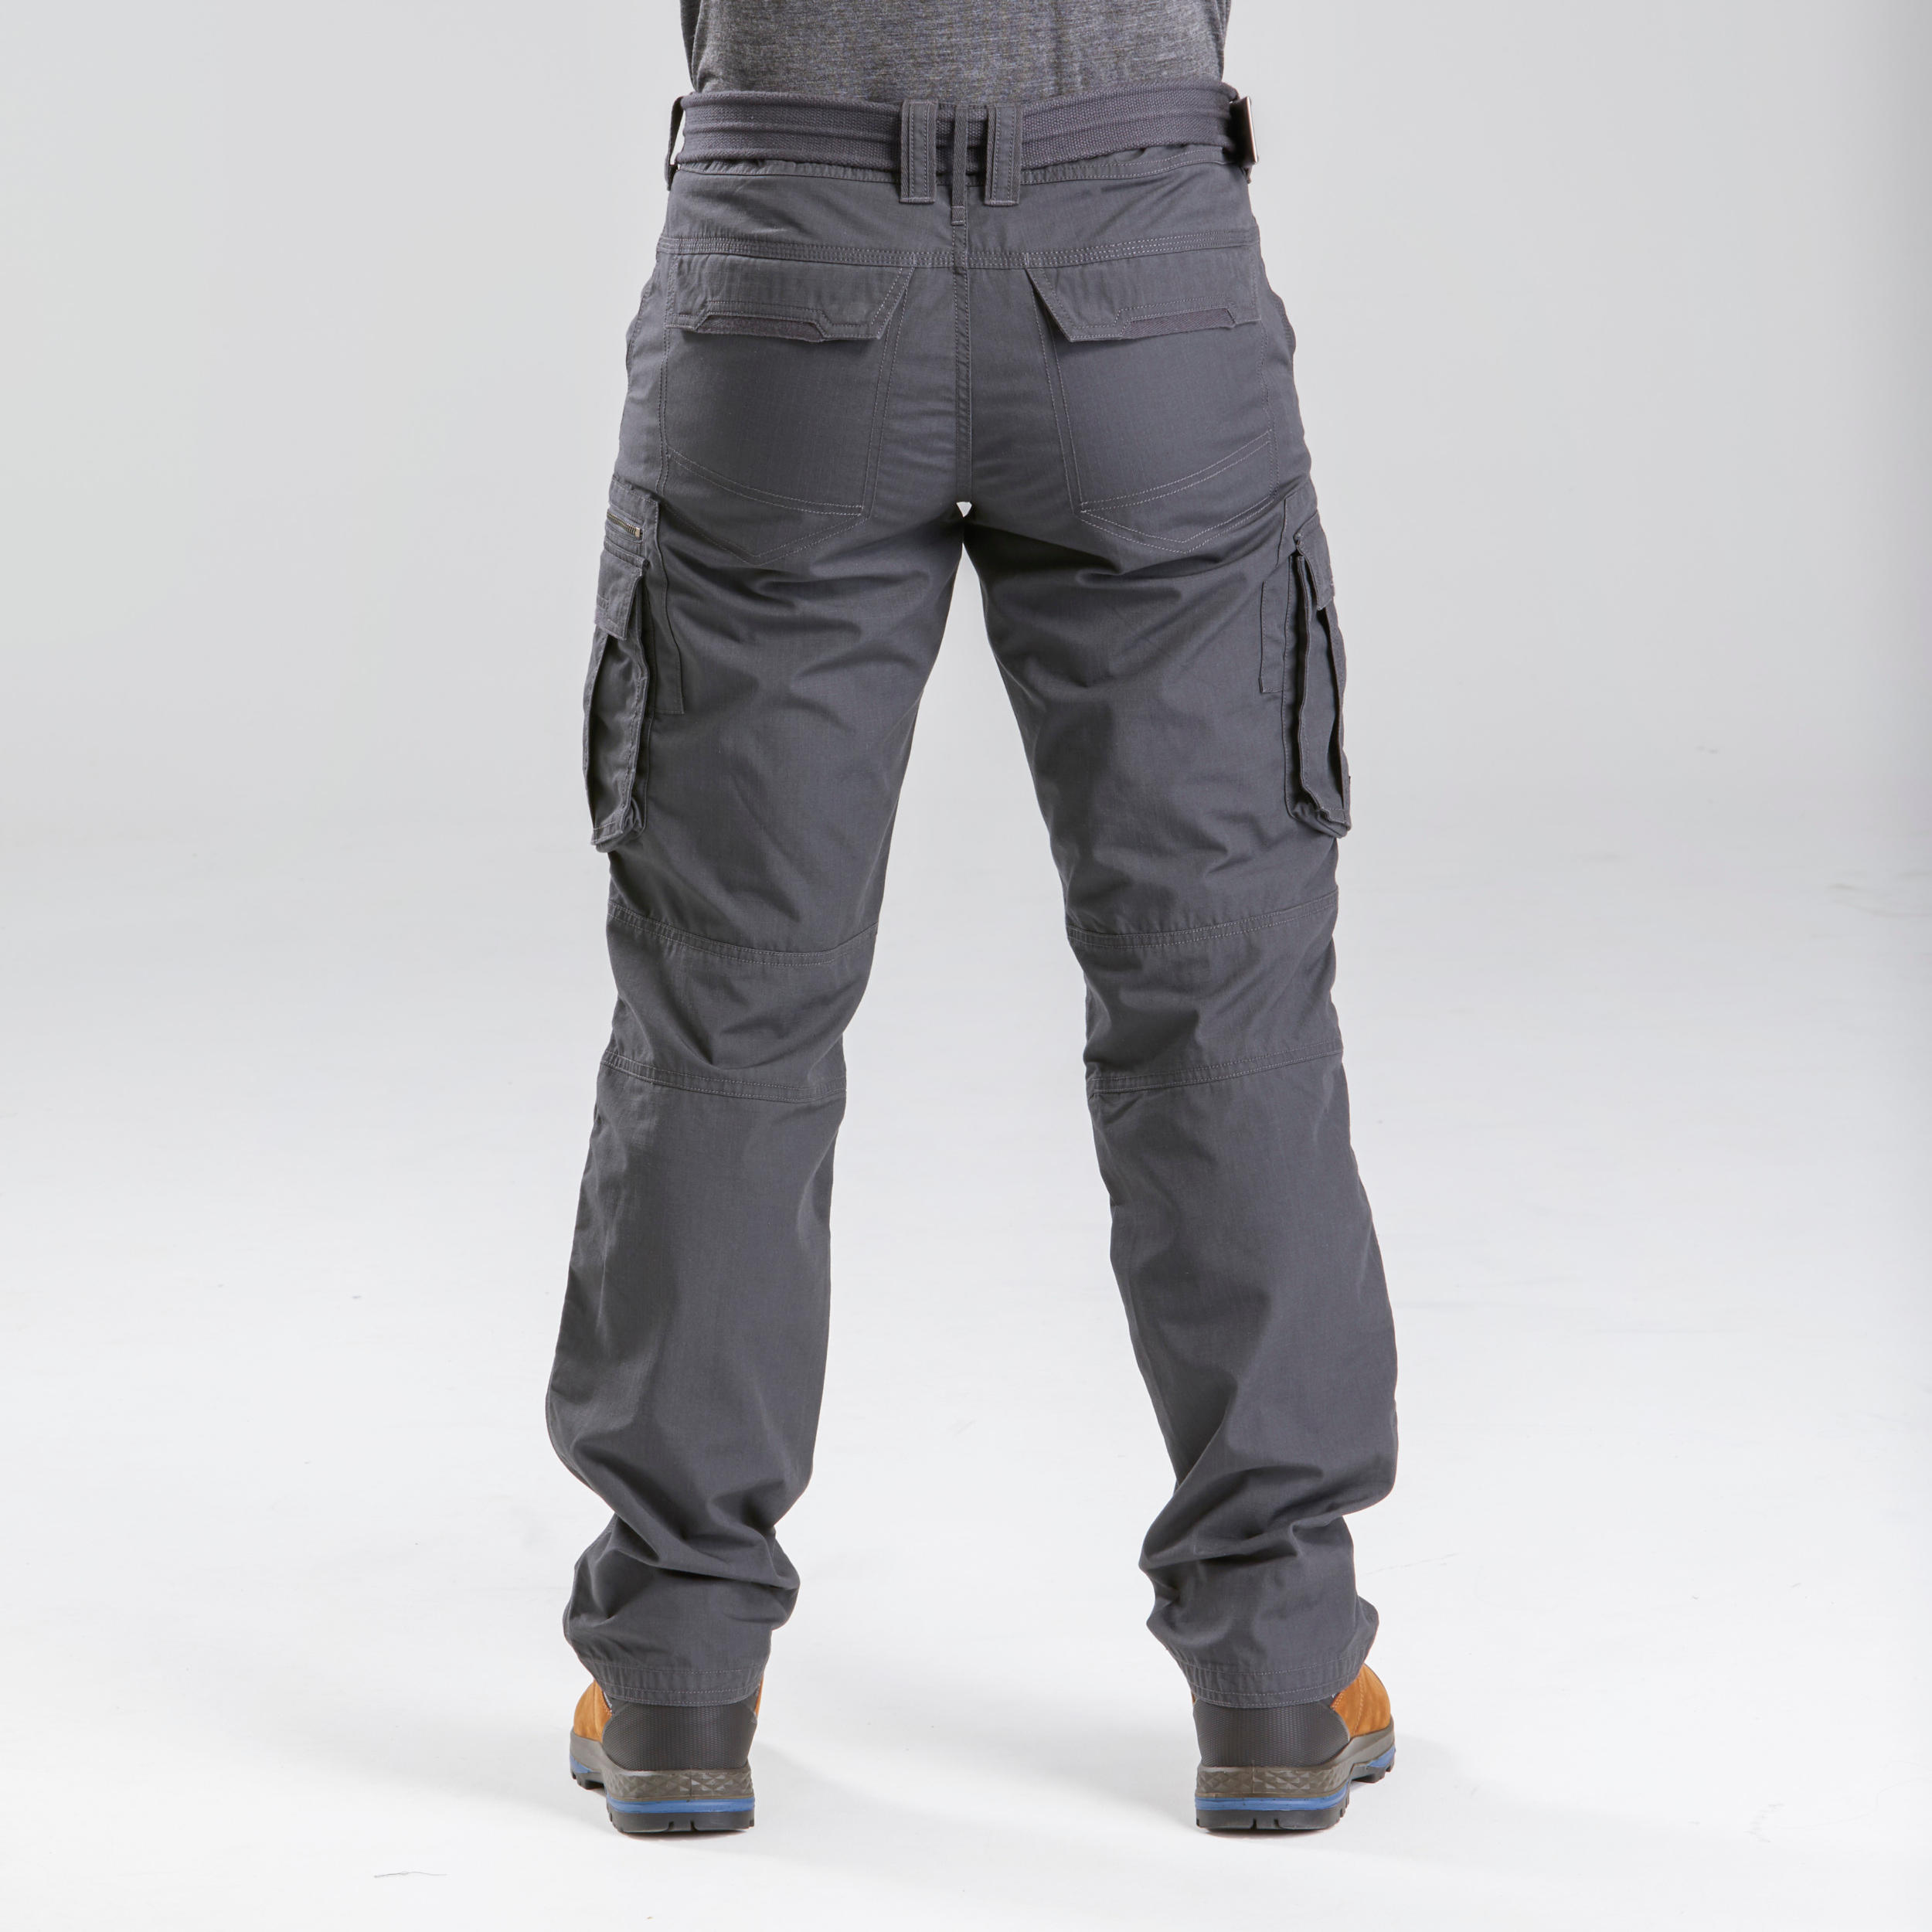 Pantalon de randonnée homme – Travel 100 gris - FORCLAZ